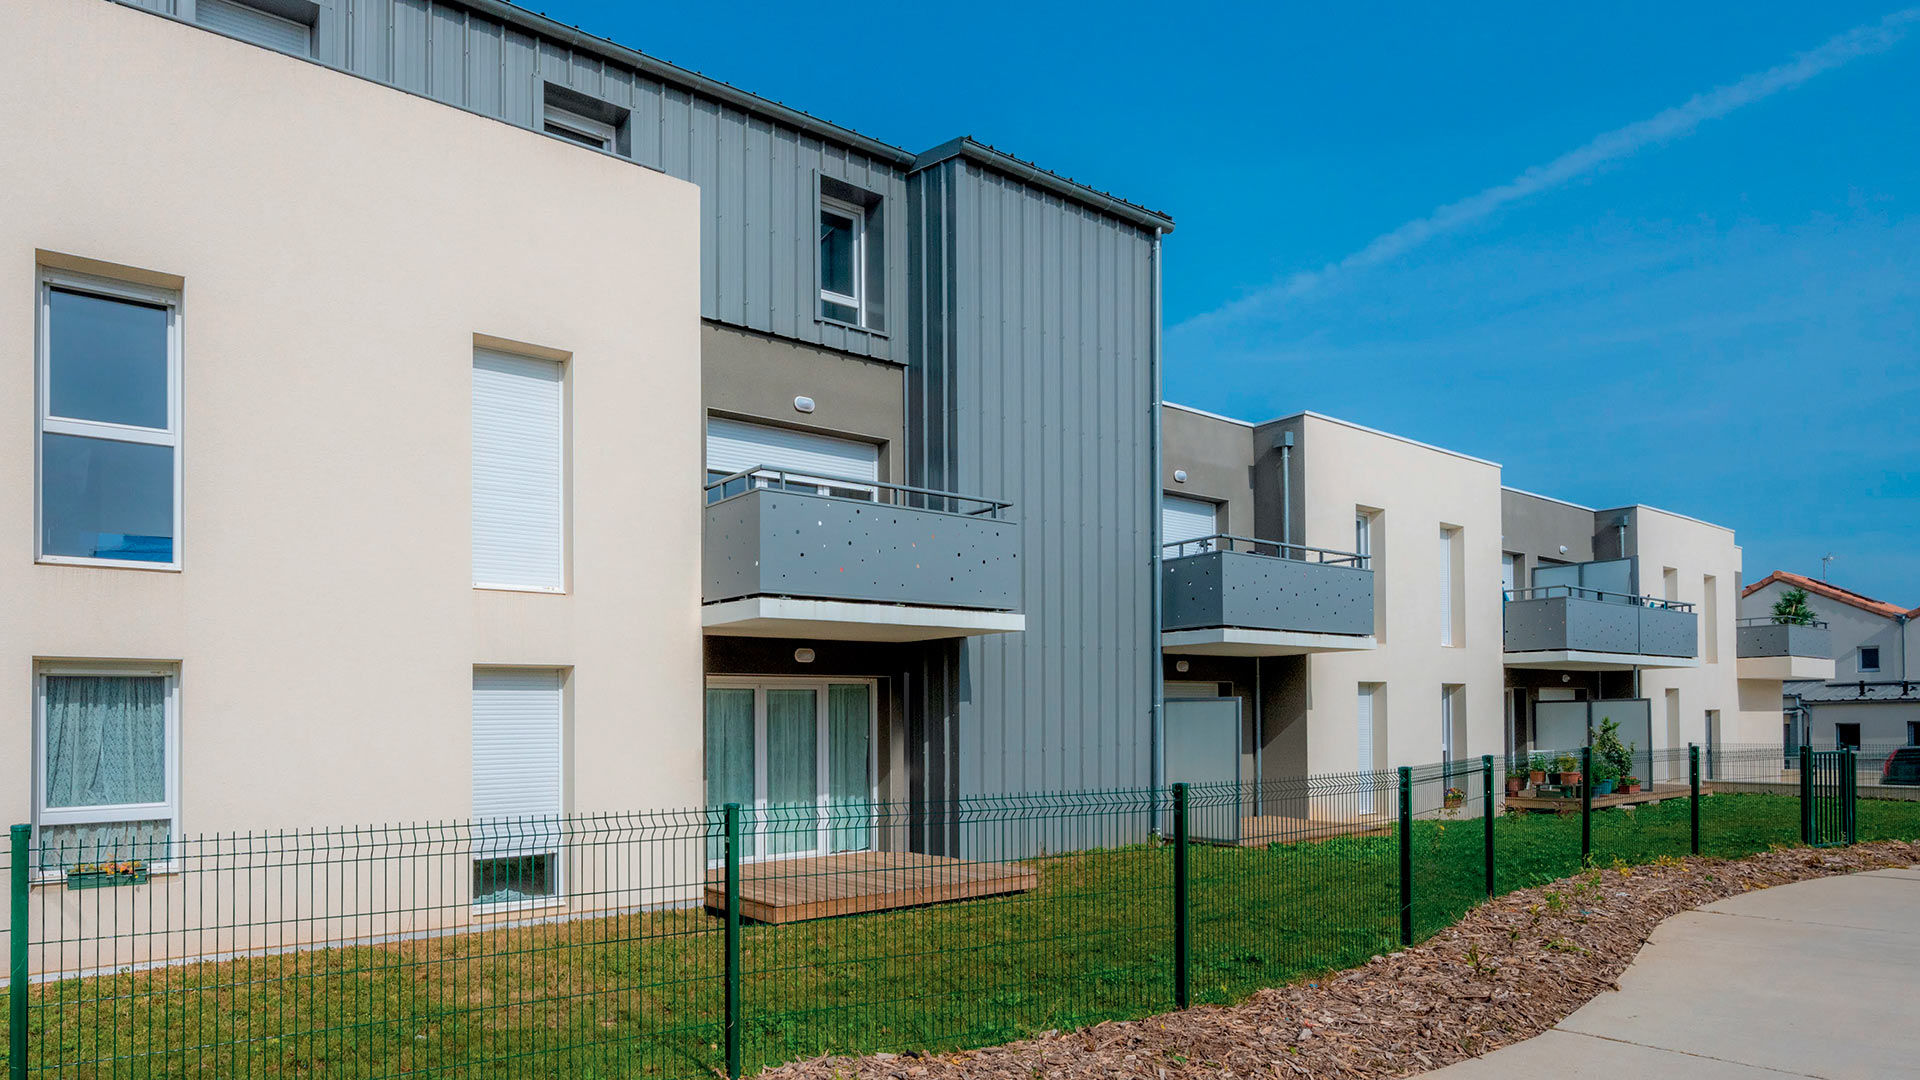 Programme mixte d'appartements et villas à La Rochelle.